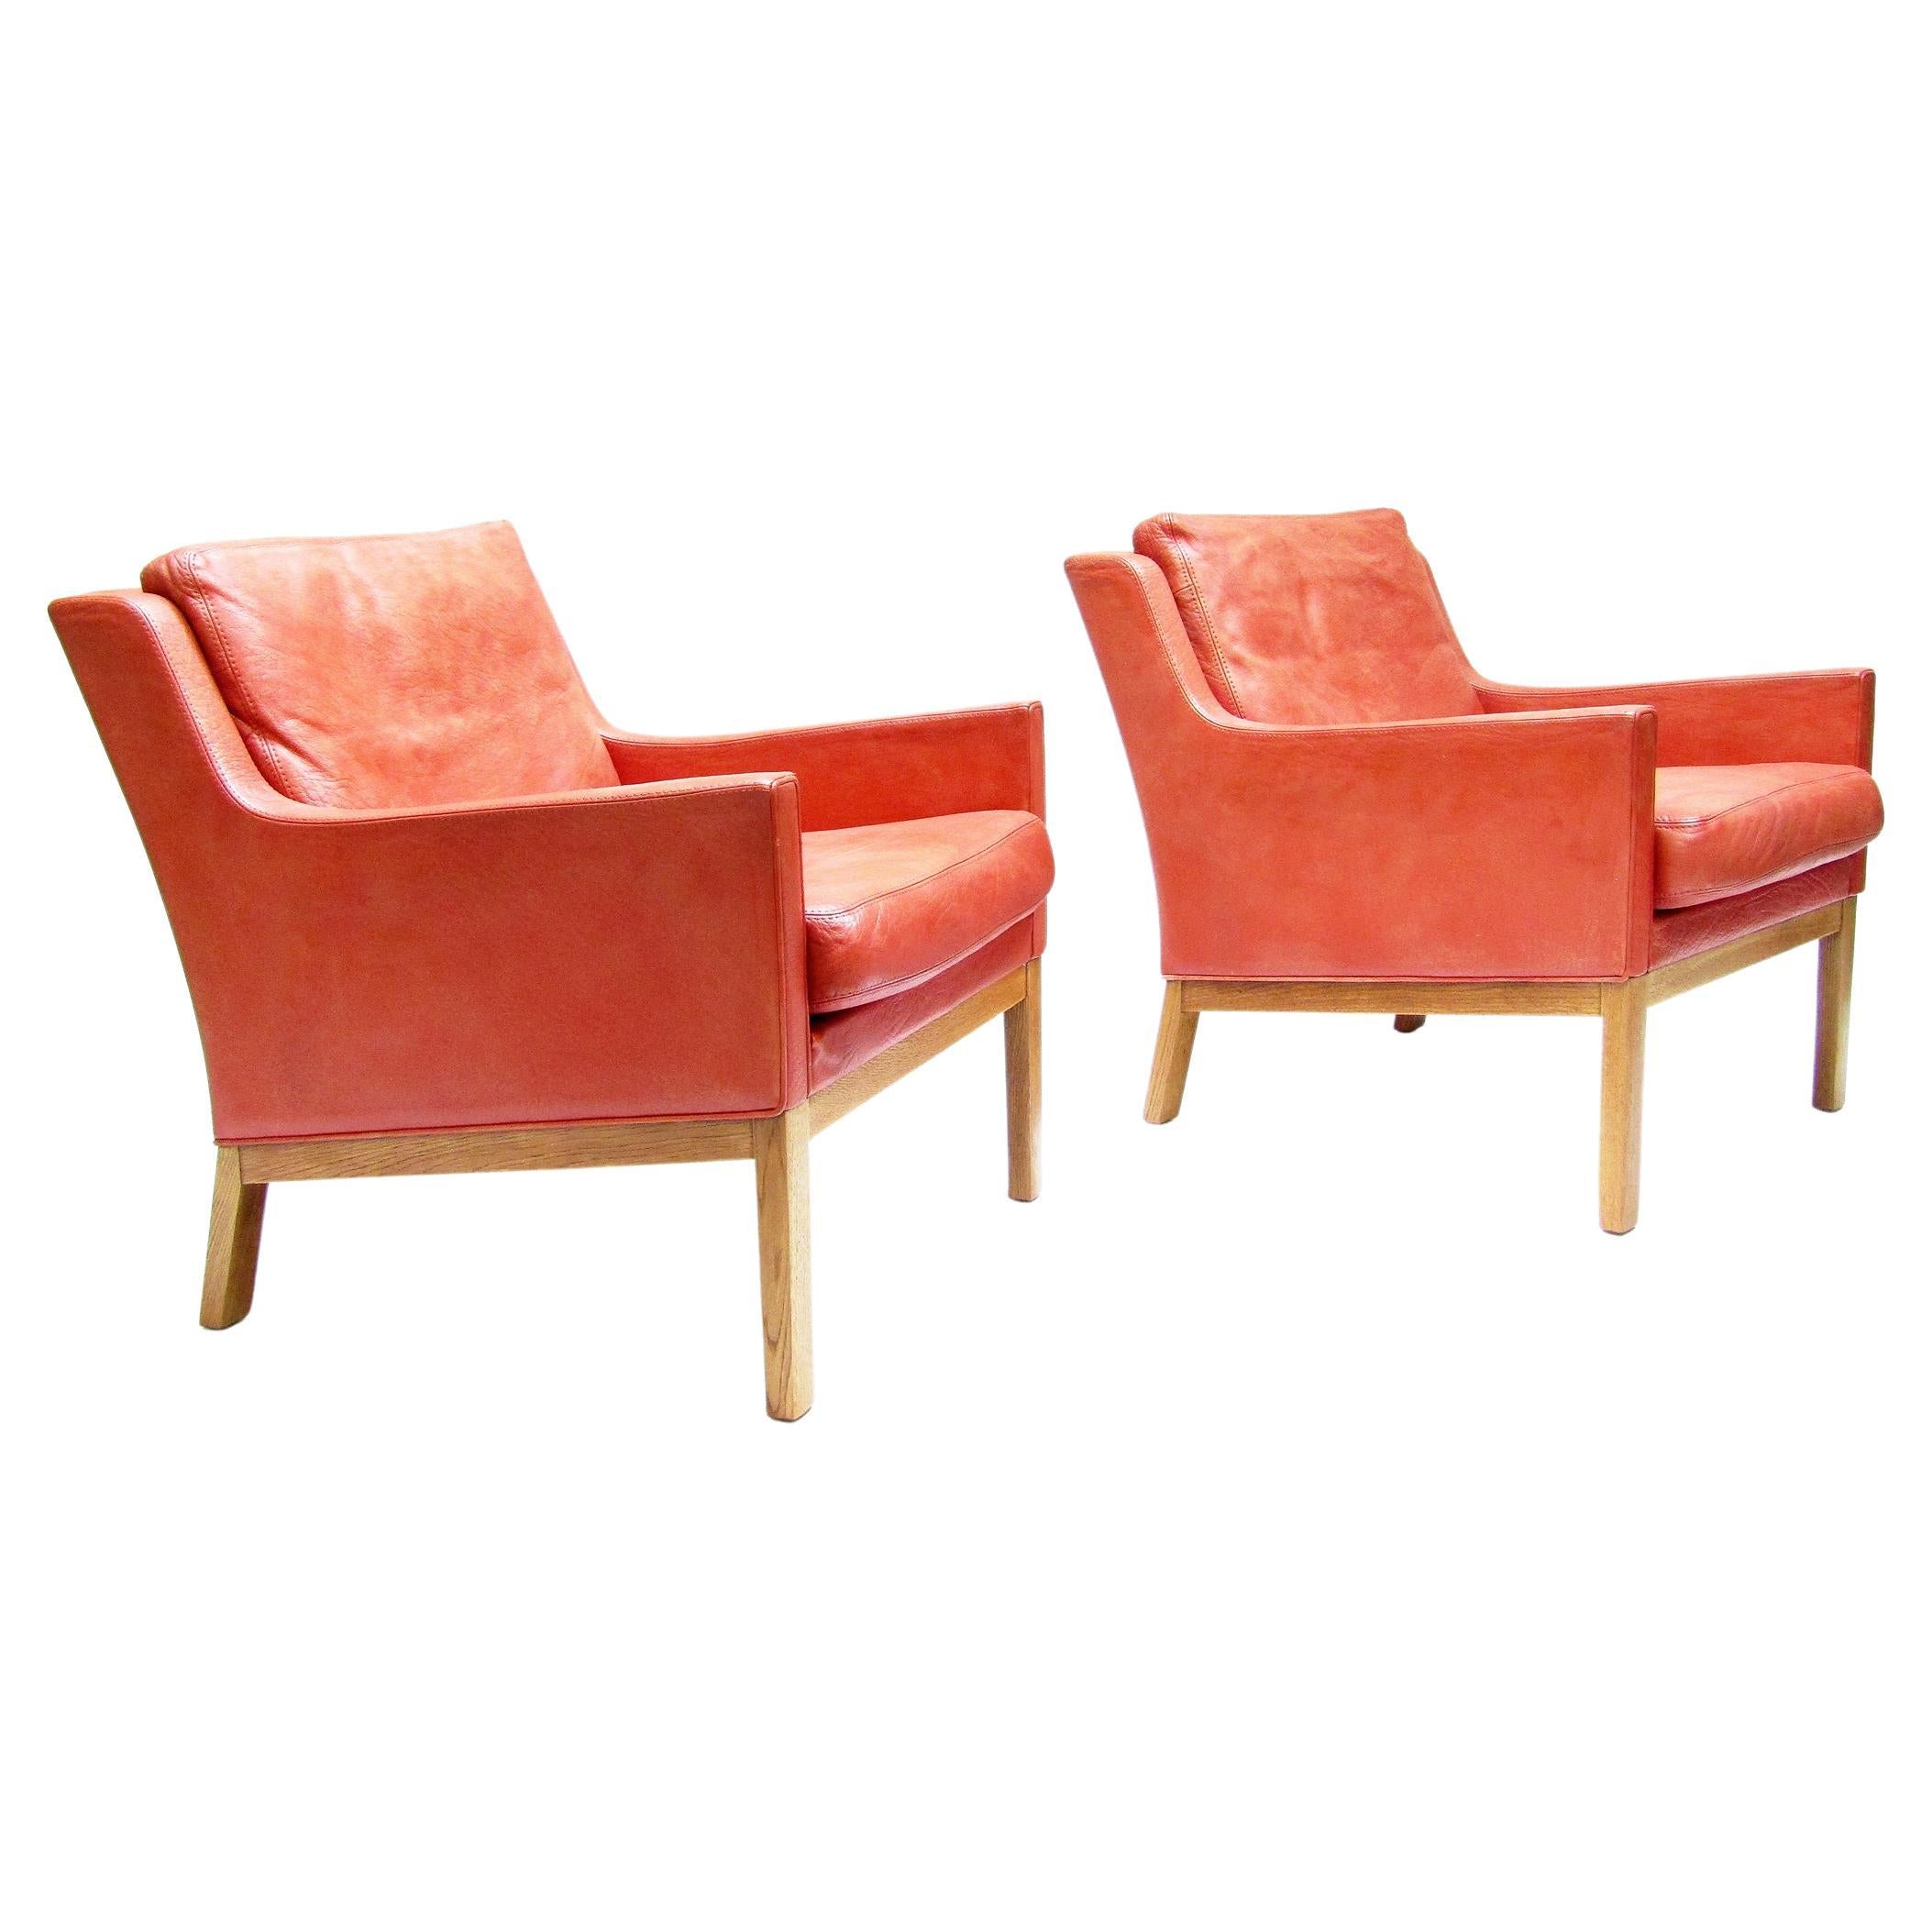 Two 1960s Danish Lounge Chairs in Leather & Oak by Kai Lyngfeldt Larsen